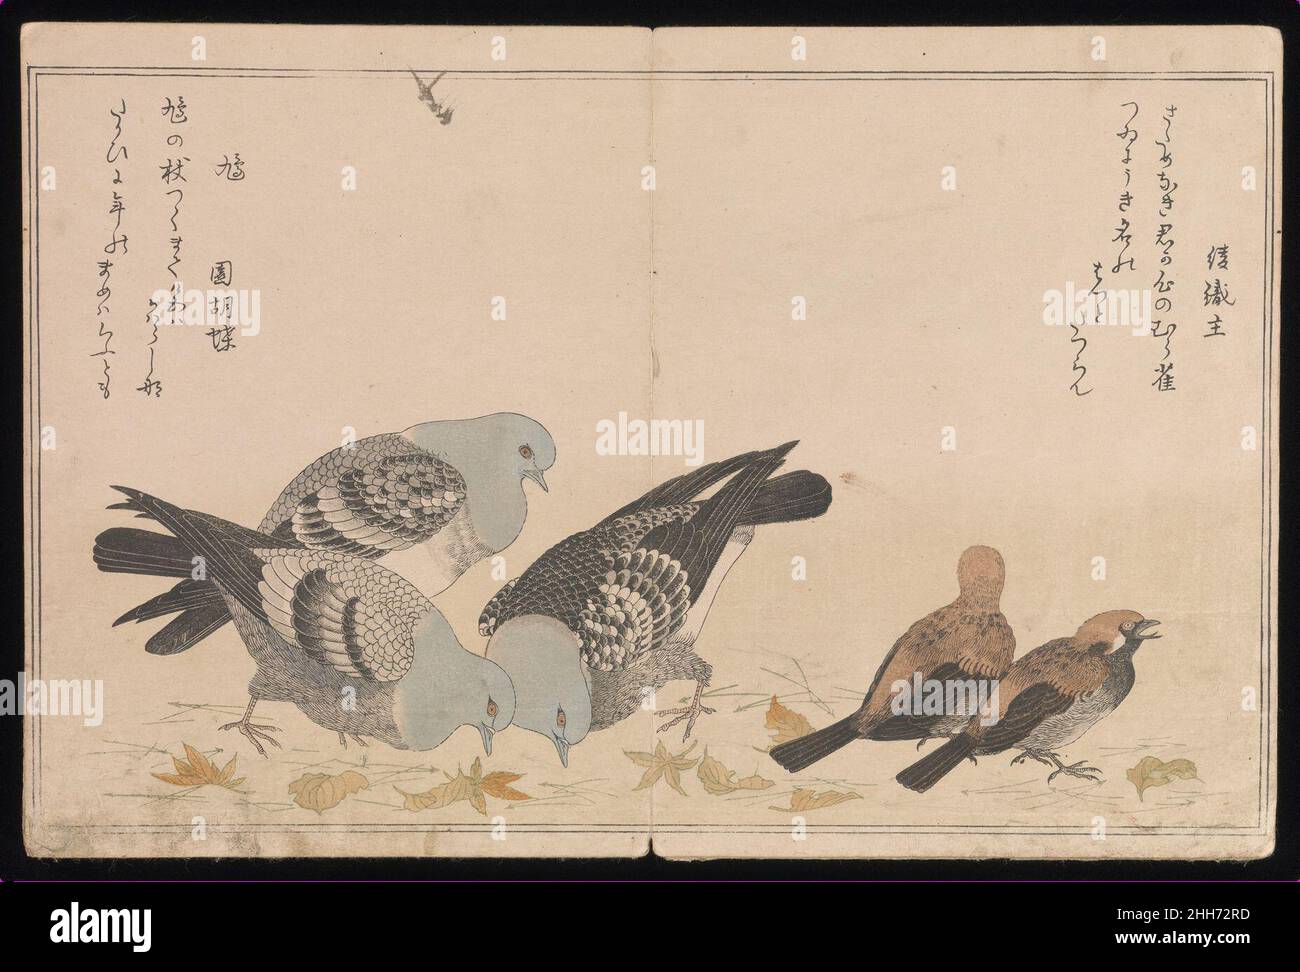 Myriad Birds:A Playful Poetry Contest (Momo chidori ky?ka-awase), 2 vol. 1790 Kitagawa Utamaro Japanese chacune des illustrations de deux pages de ce livre représente deux espèces aviaires accompagnées d'une paire de poèmes d'amour espiègle écrits dans la « voix » de l'oiseau respectif.Les poèmes sont ky?ka (littéralement, “fou verset”), ou ludique verset léger écrit en cinq lignes de 5-7-5-7-7 syllabes respectivement.Japanese Grosbeak (Mamemawashi, “Bean-turner”) Shinobu no ni irazaru kuchi no mamemawashi tsui saezurite na ya asuramuMa bouche n’est pas secrète, mais l’affaire d’oiseau est secrète Banque D'Images